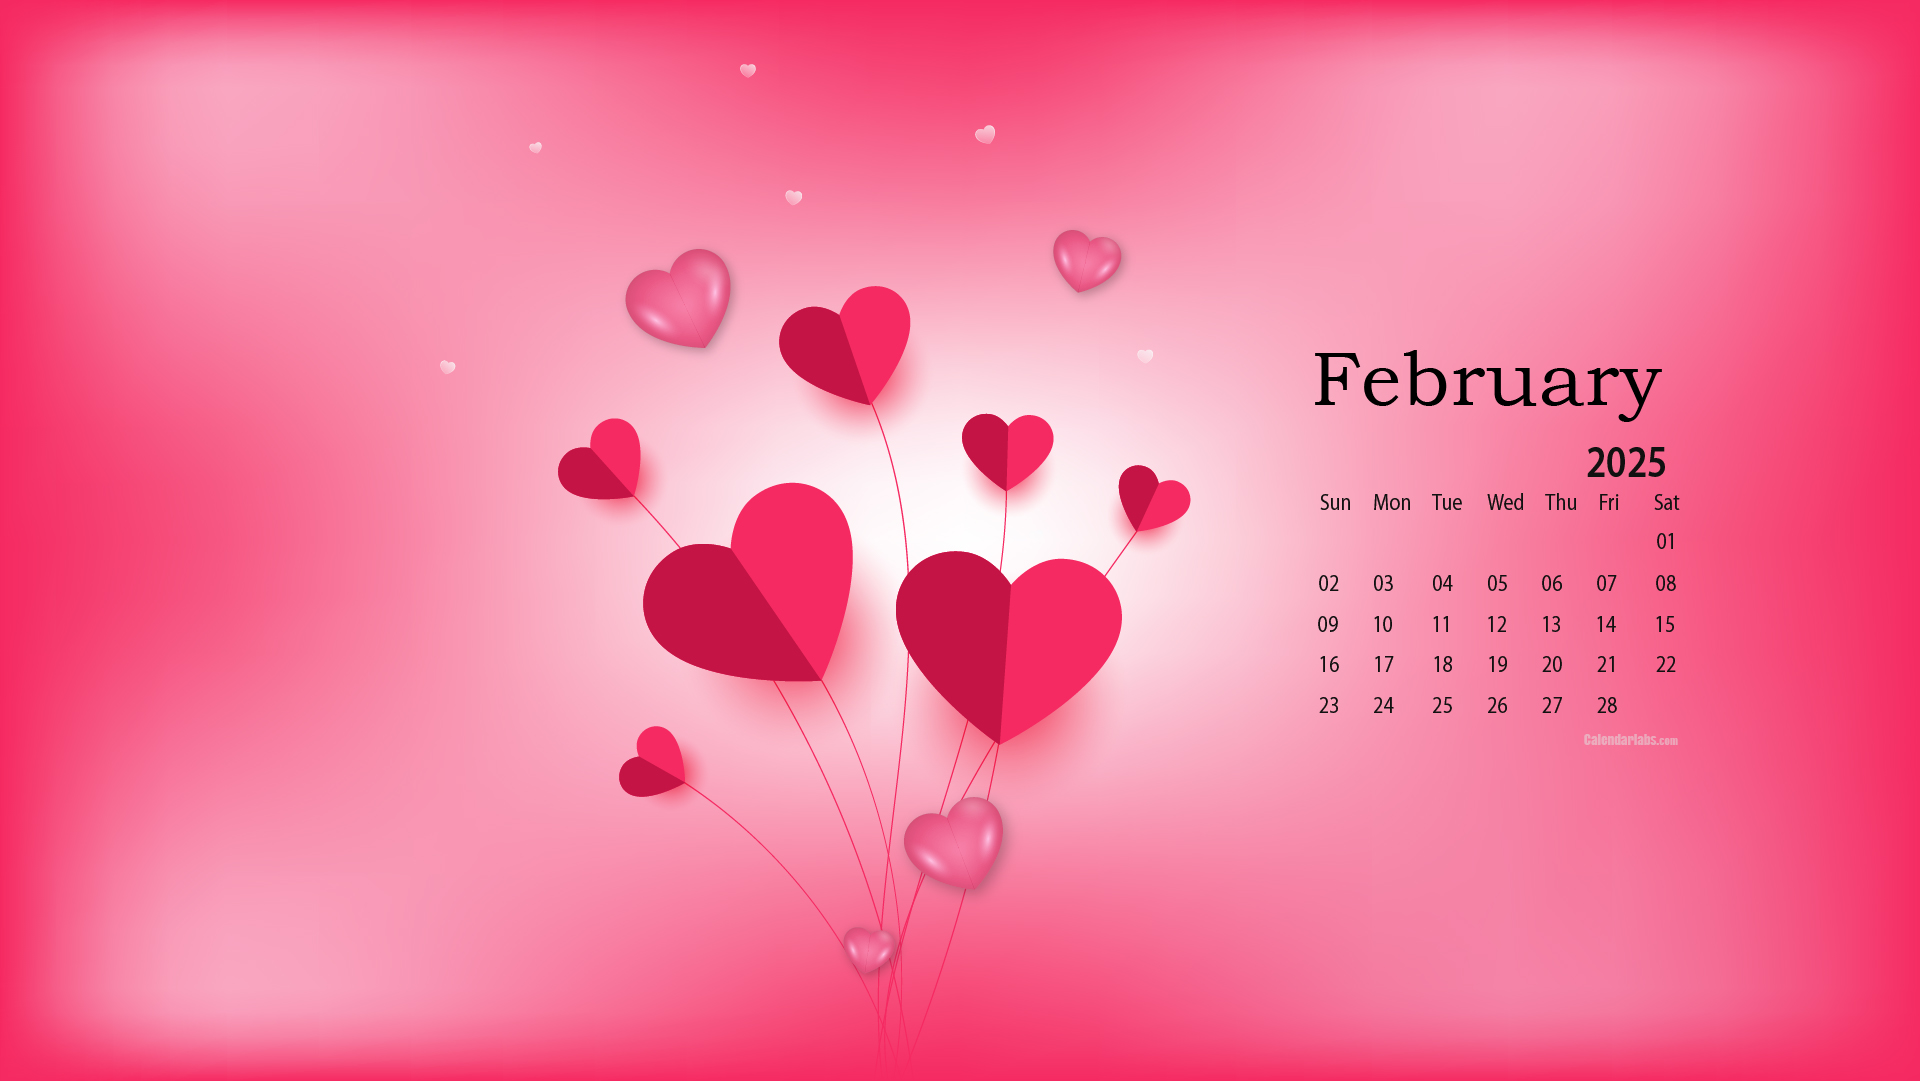 February 2025 Desktop Wallpaper Calendar CalendarLabs